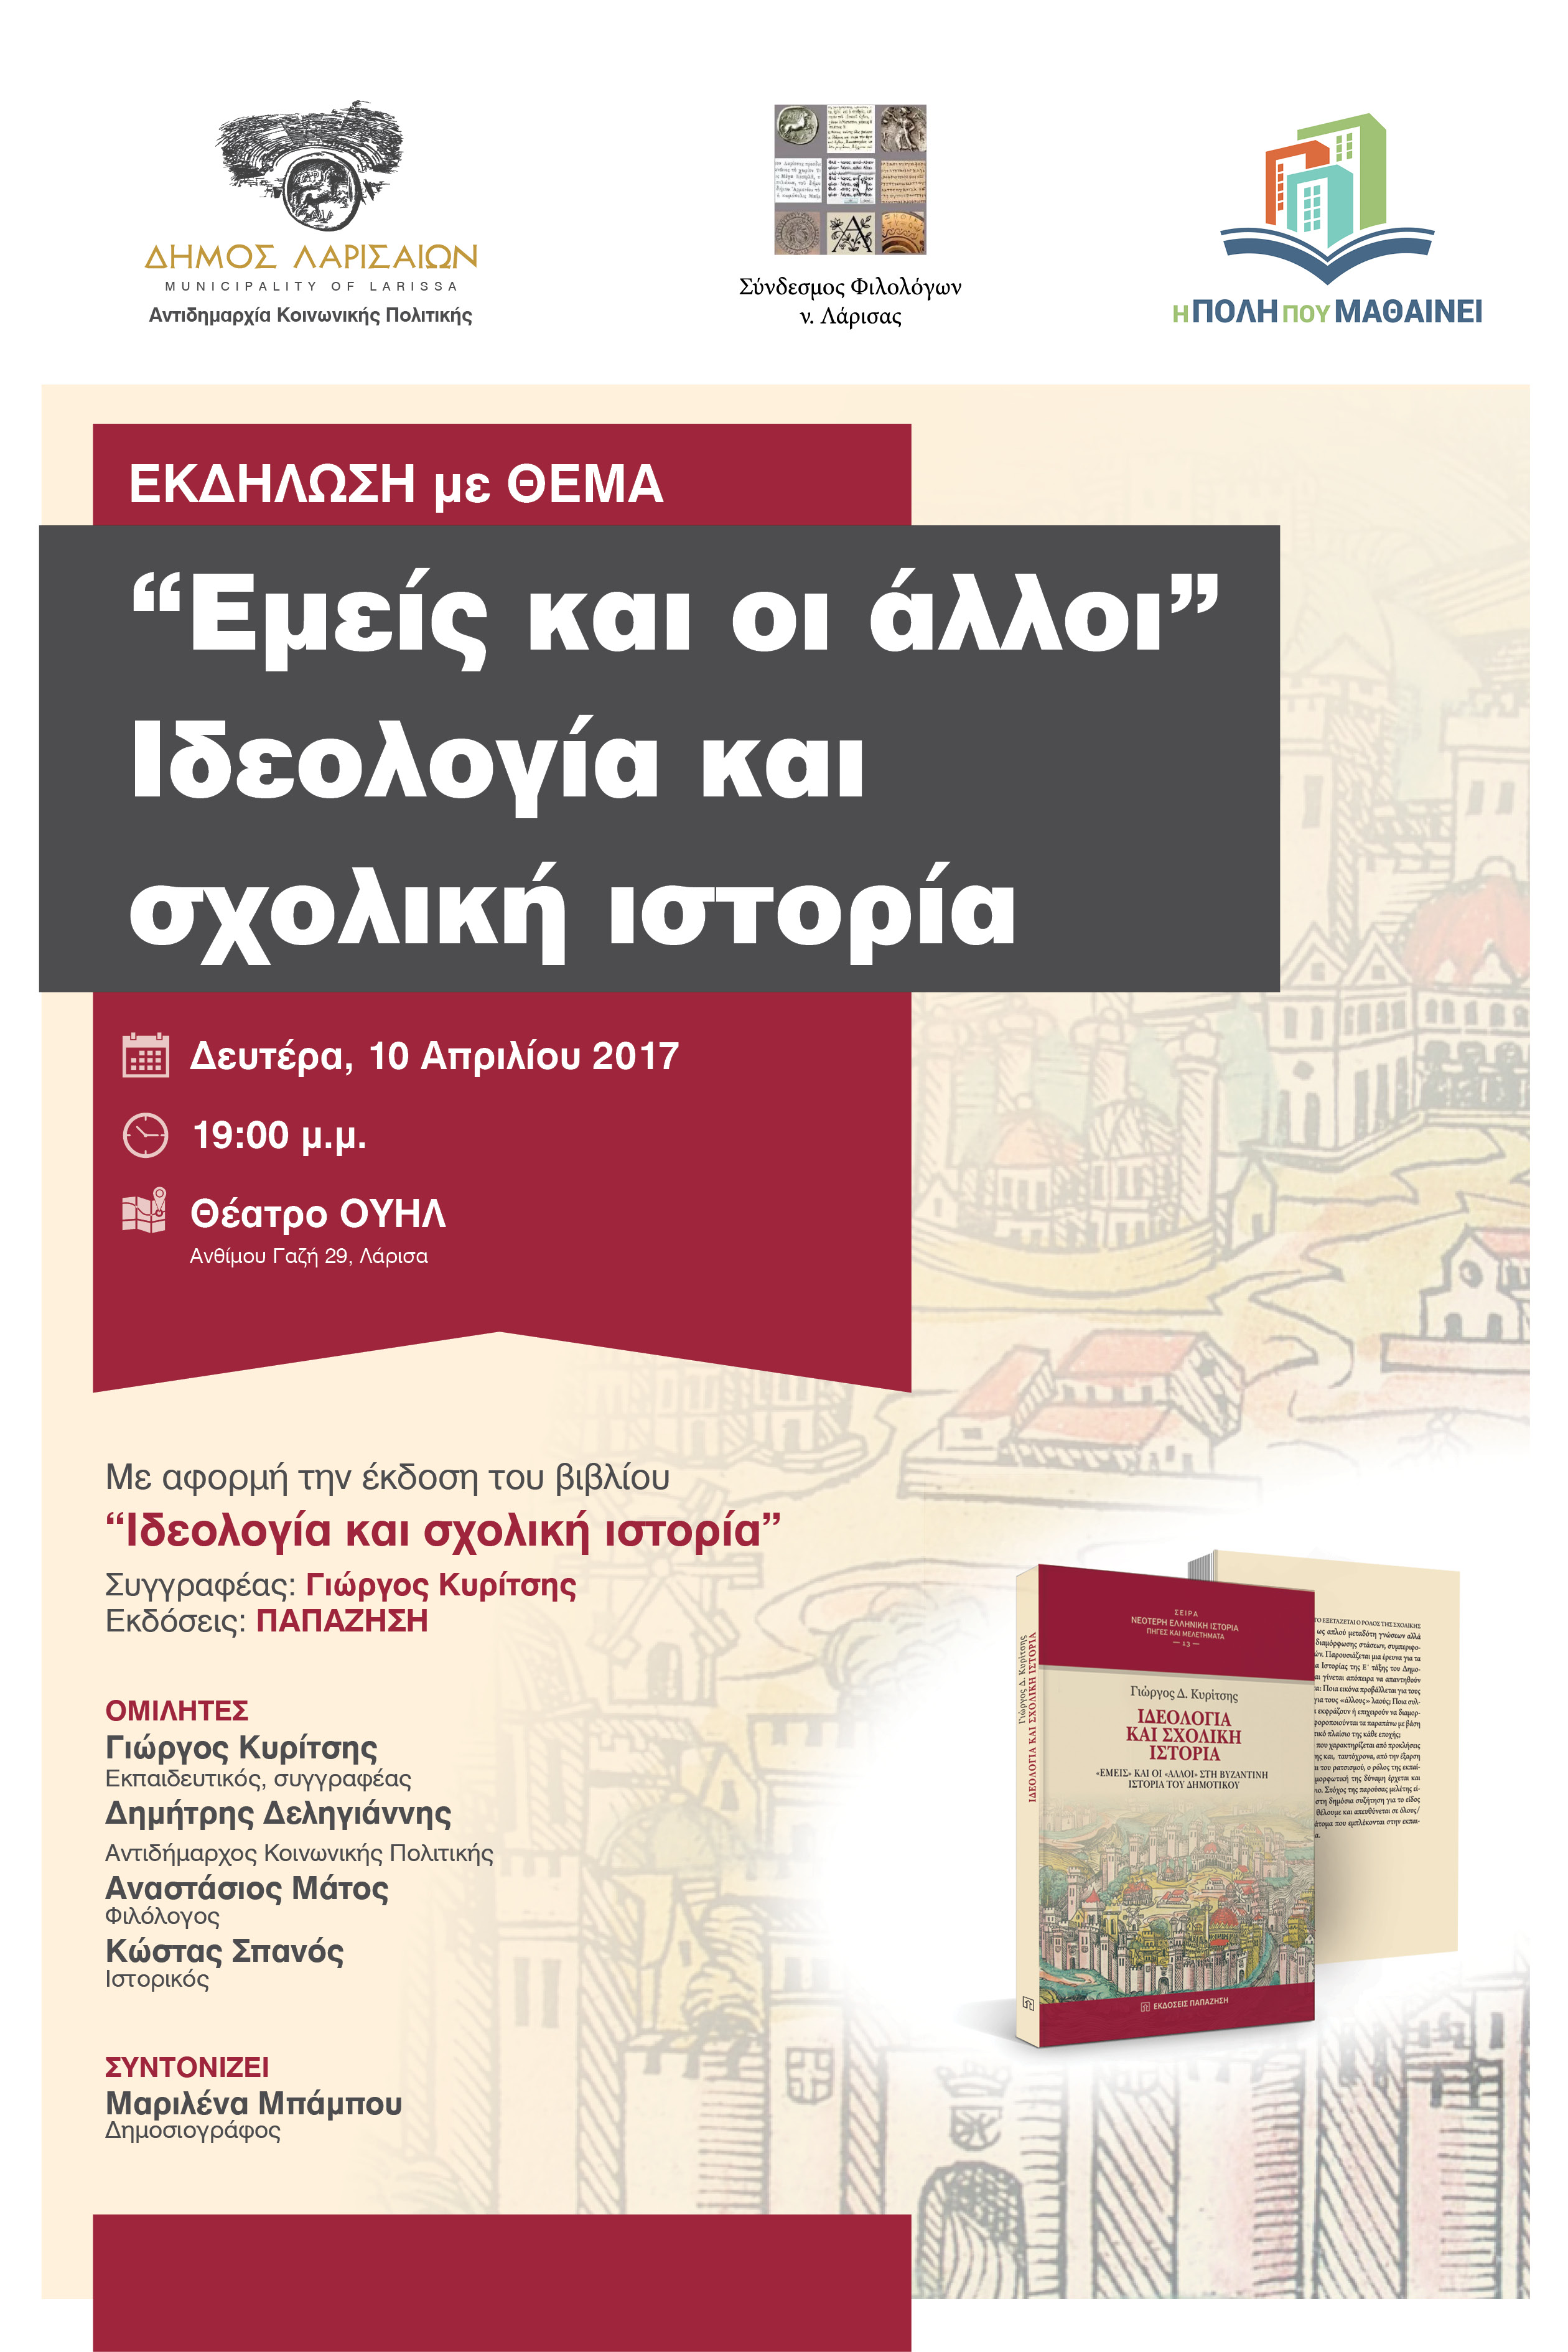 Eκδήλωση για την έκδοση του βιβλίου "ιδεολογία και σχολική ιστορία" 